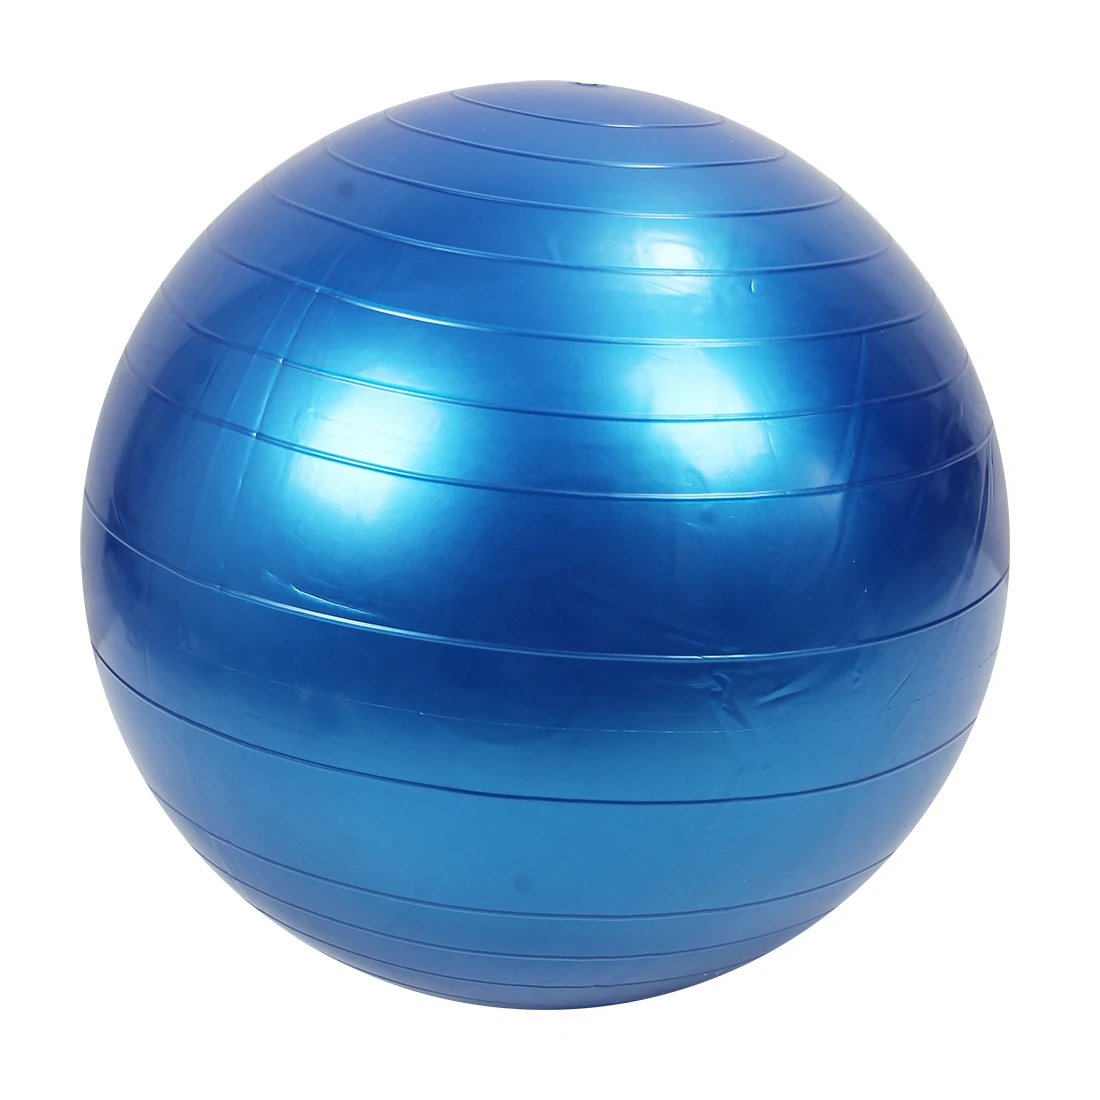 Для занятий спортом, пилатеса фитнес-мяч для йоги мячи для упражнений арахисовые упражнения баланс гимнастическая площадка 55 см фиолетовый